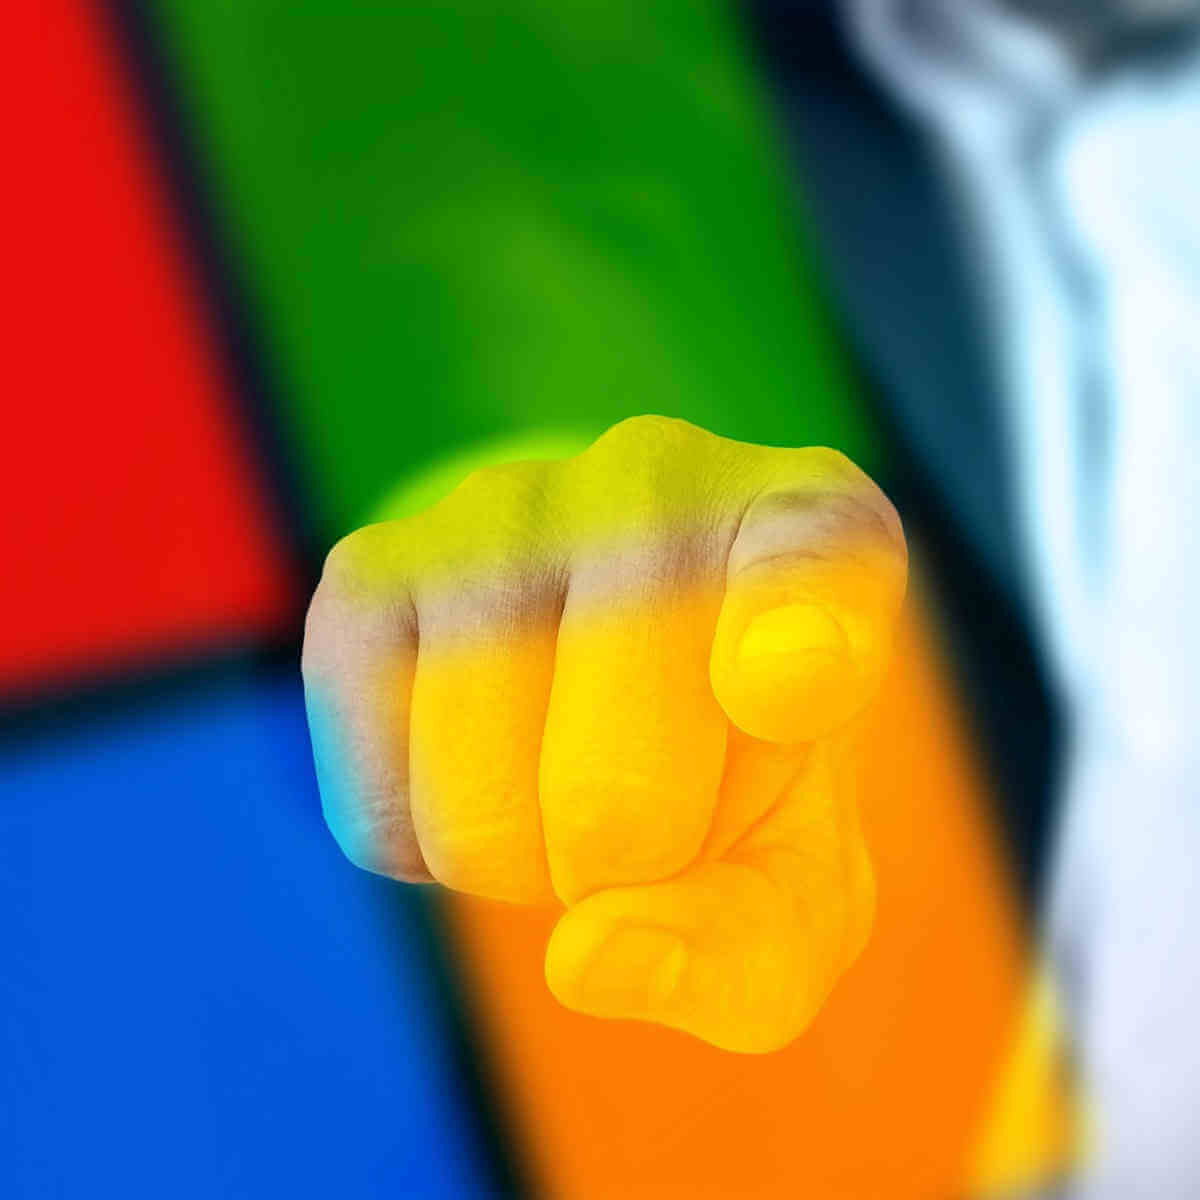 Windows logo pointing finger